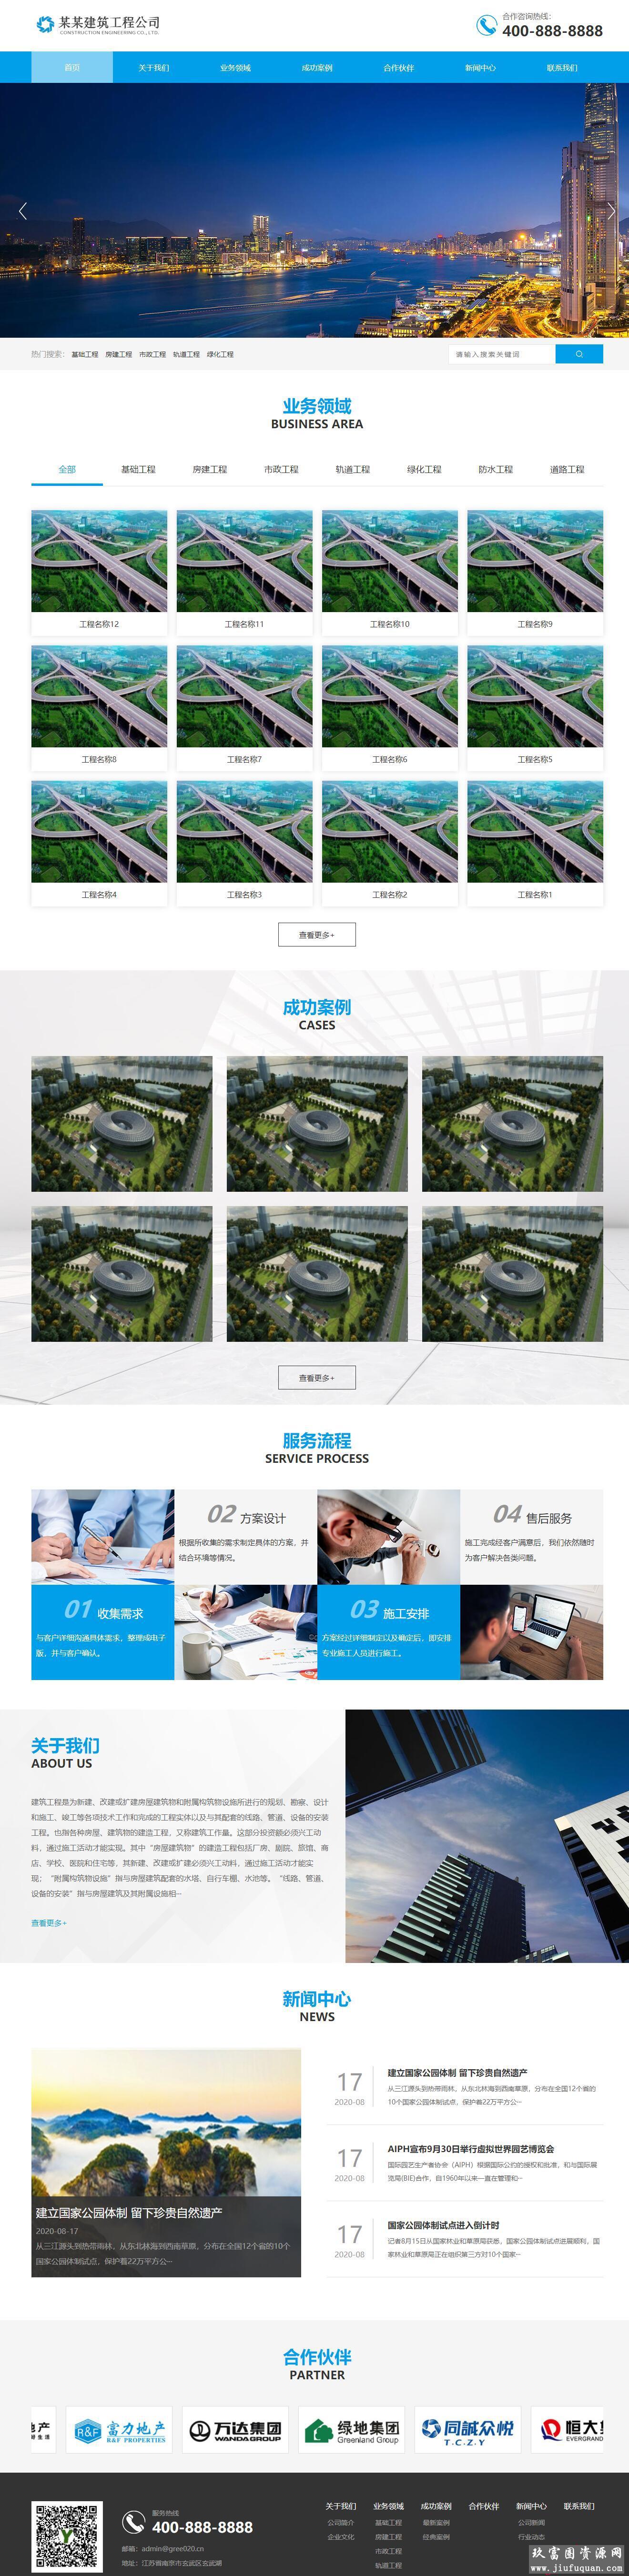 蓝色大气基础建设工程建筑类pbootcms网站模板